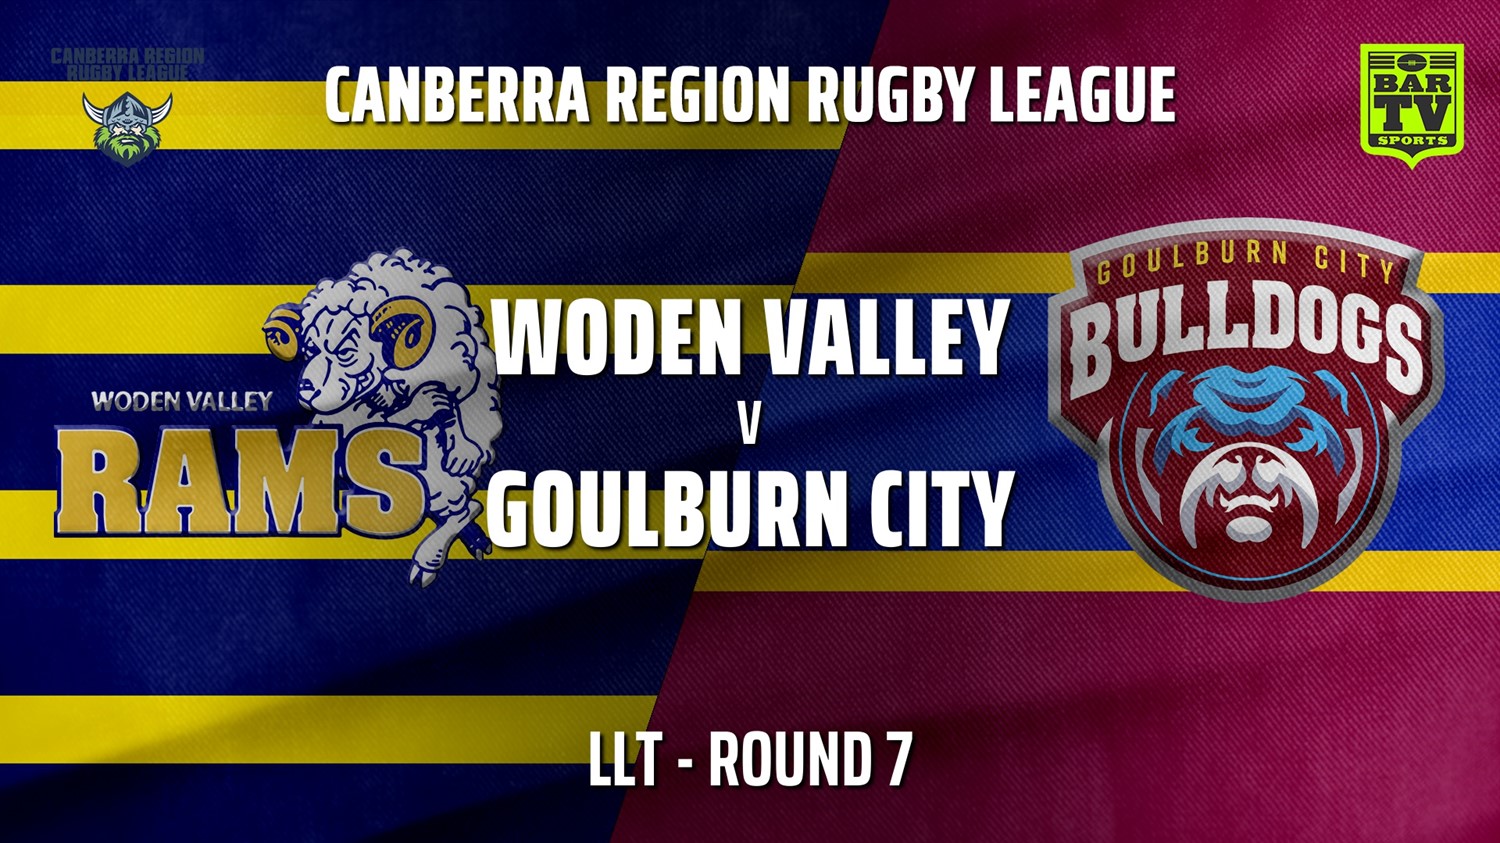 210529-CRRL Round 7 - LLT - Woden Valley Rams v Goulburn City Bulldogs Slate Image